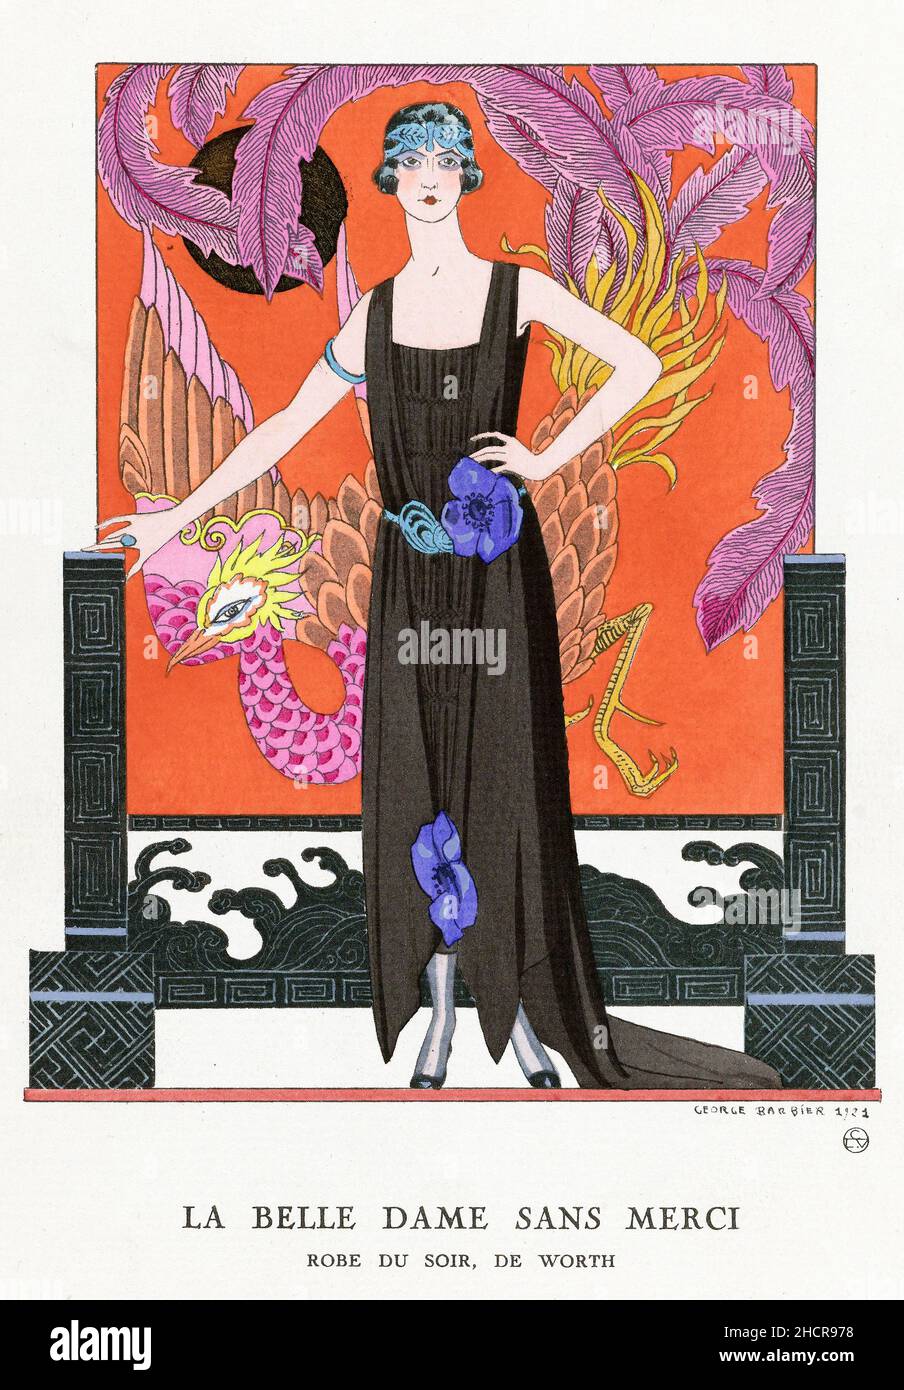 “la belle dame sans merci”, une illustration vintage de l’artiste français George Barbier (1882–1932), impression typographique, 1921 Banque D'Images